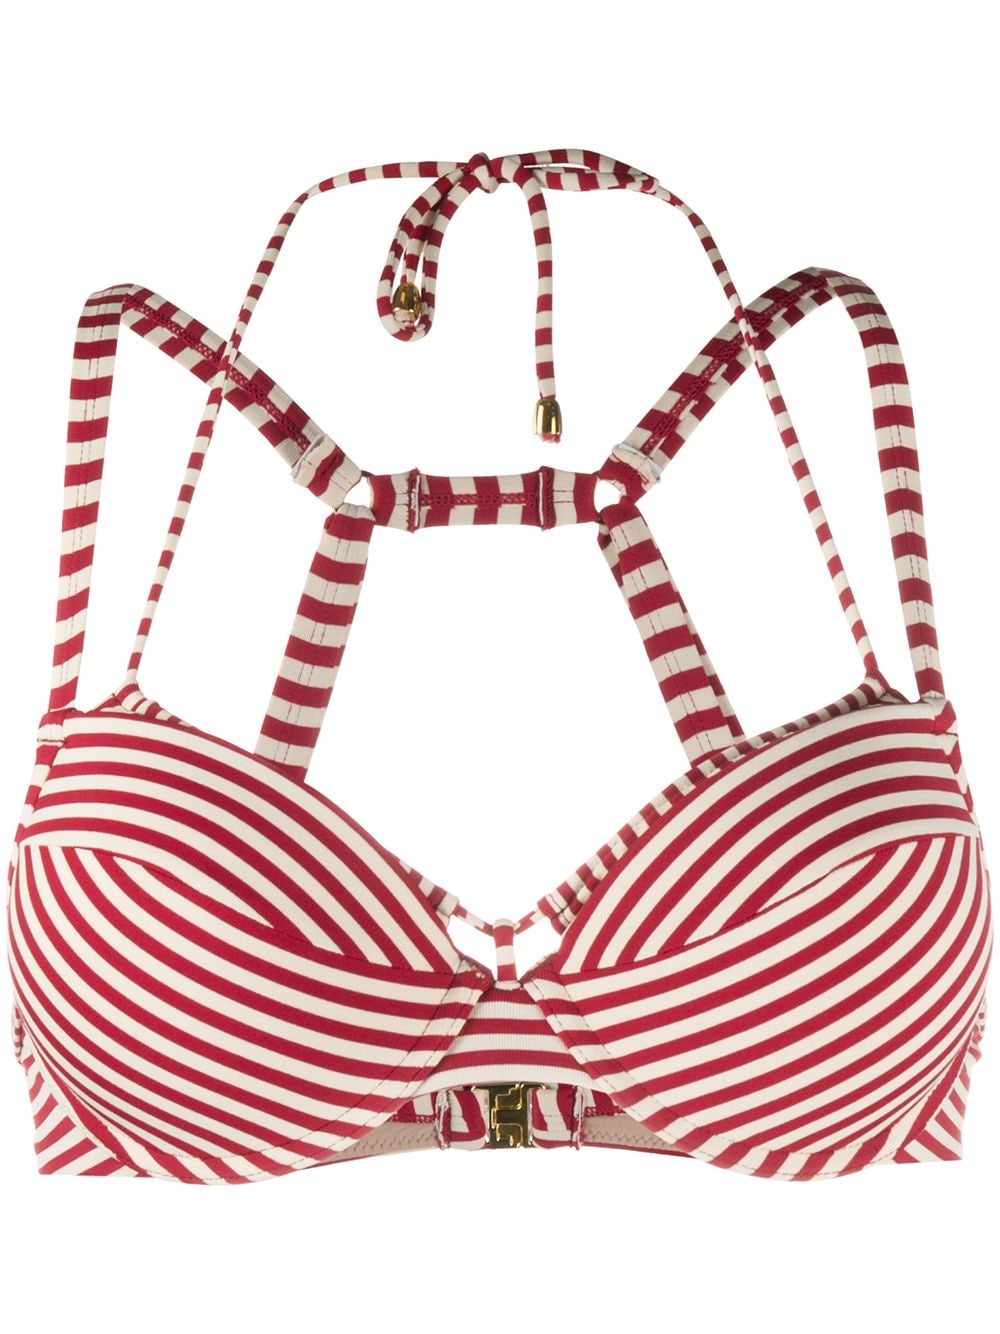 Marlies Dekkers Striped push-up Bikini Top - Farfetch